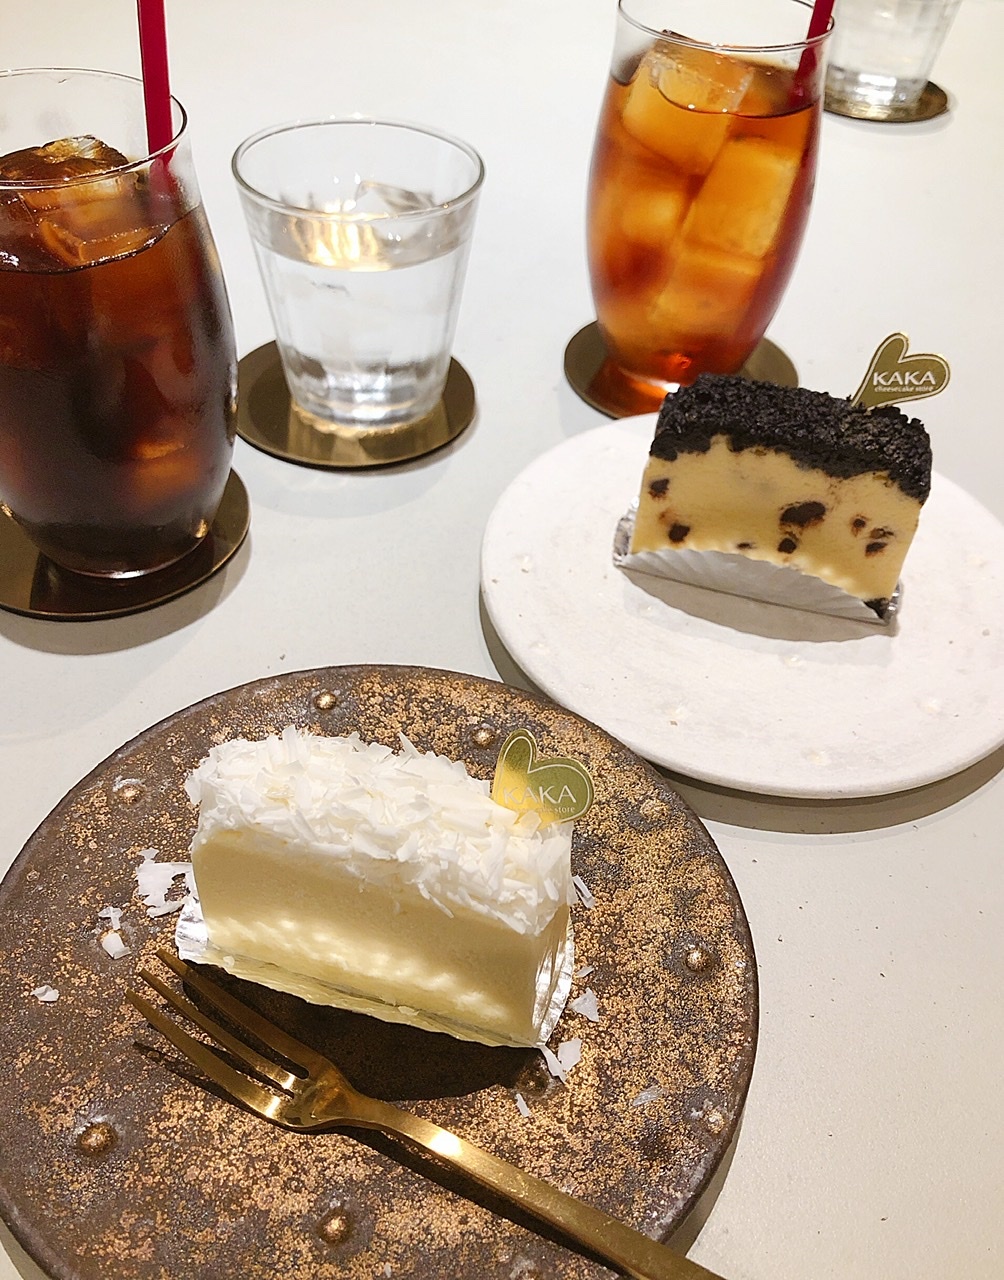 早良区西新 美味しいチーズケーキの専門店 Kaka Ossanmamaの福岡グルメブログ